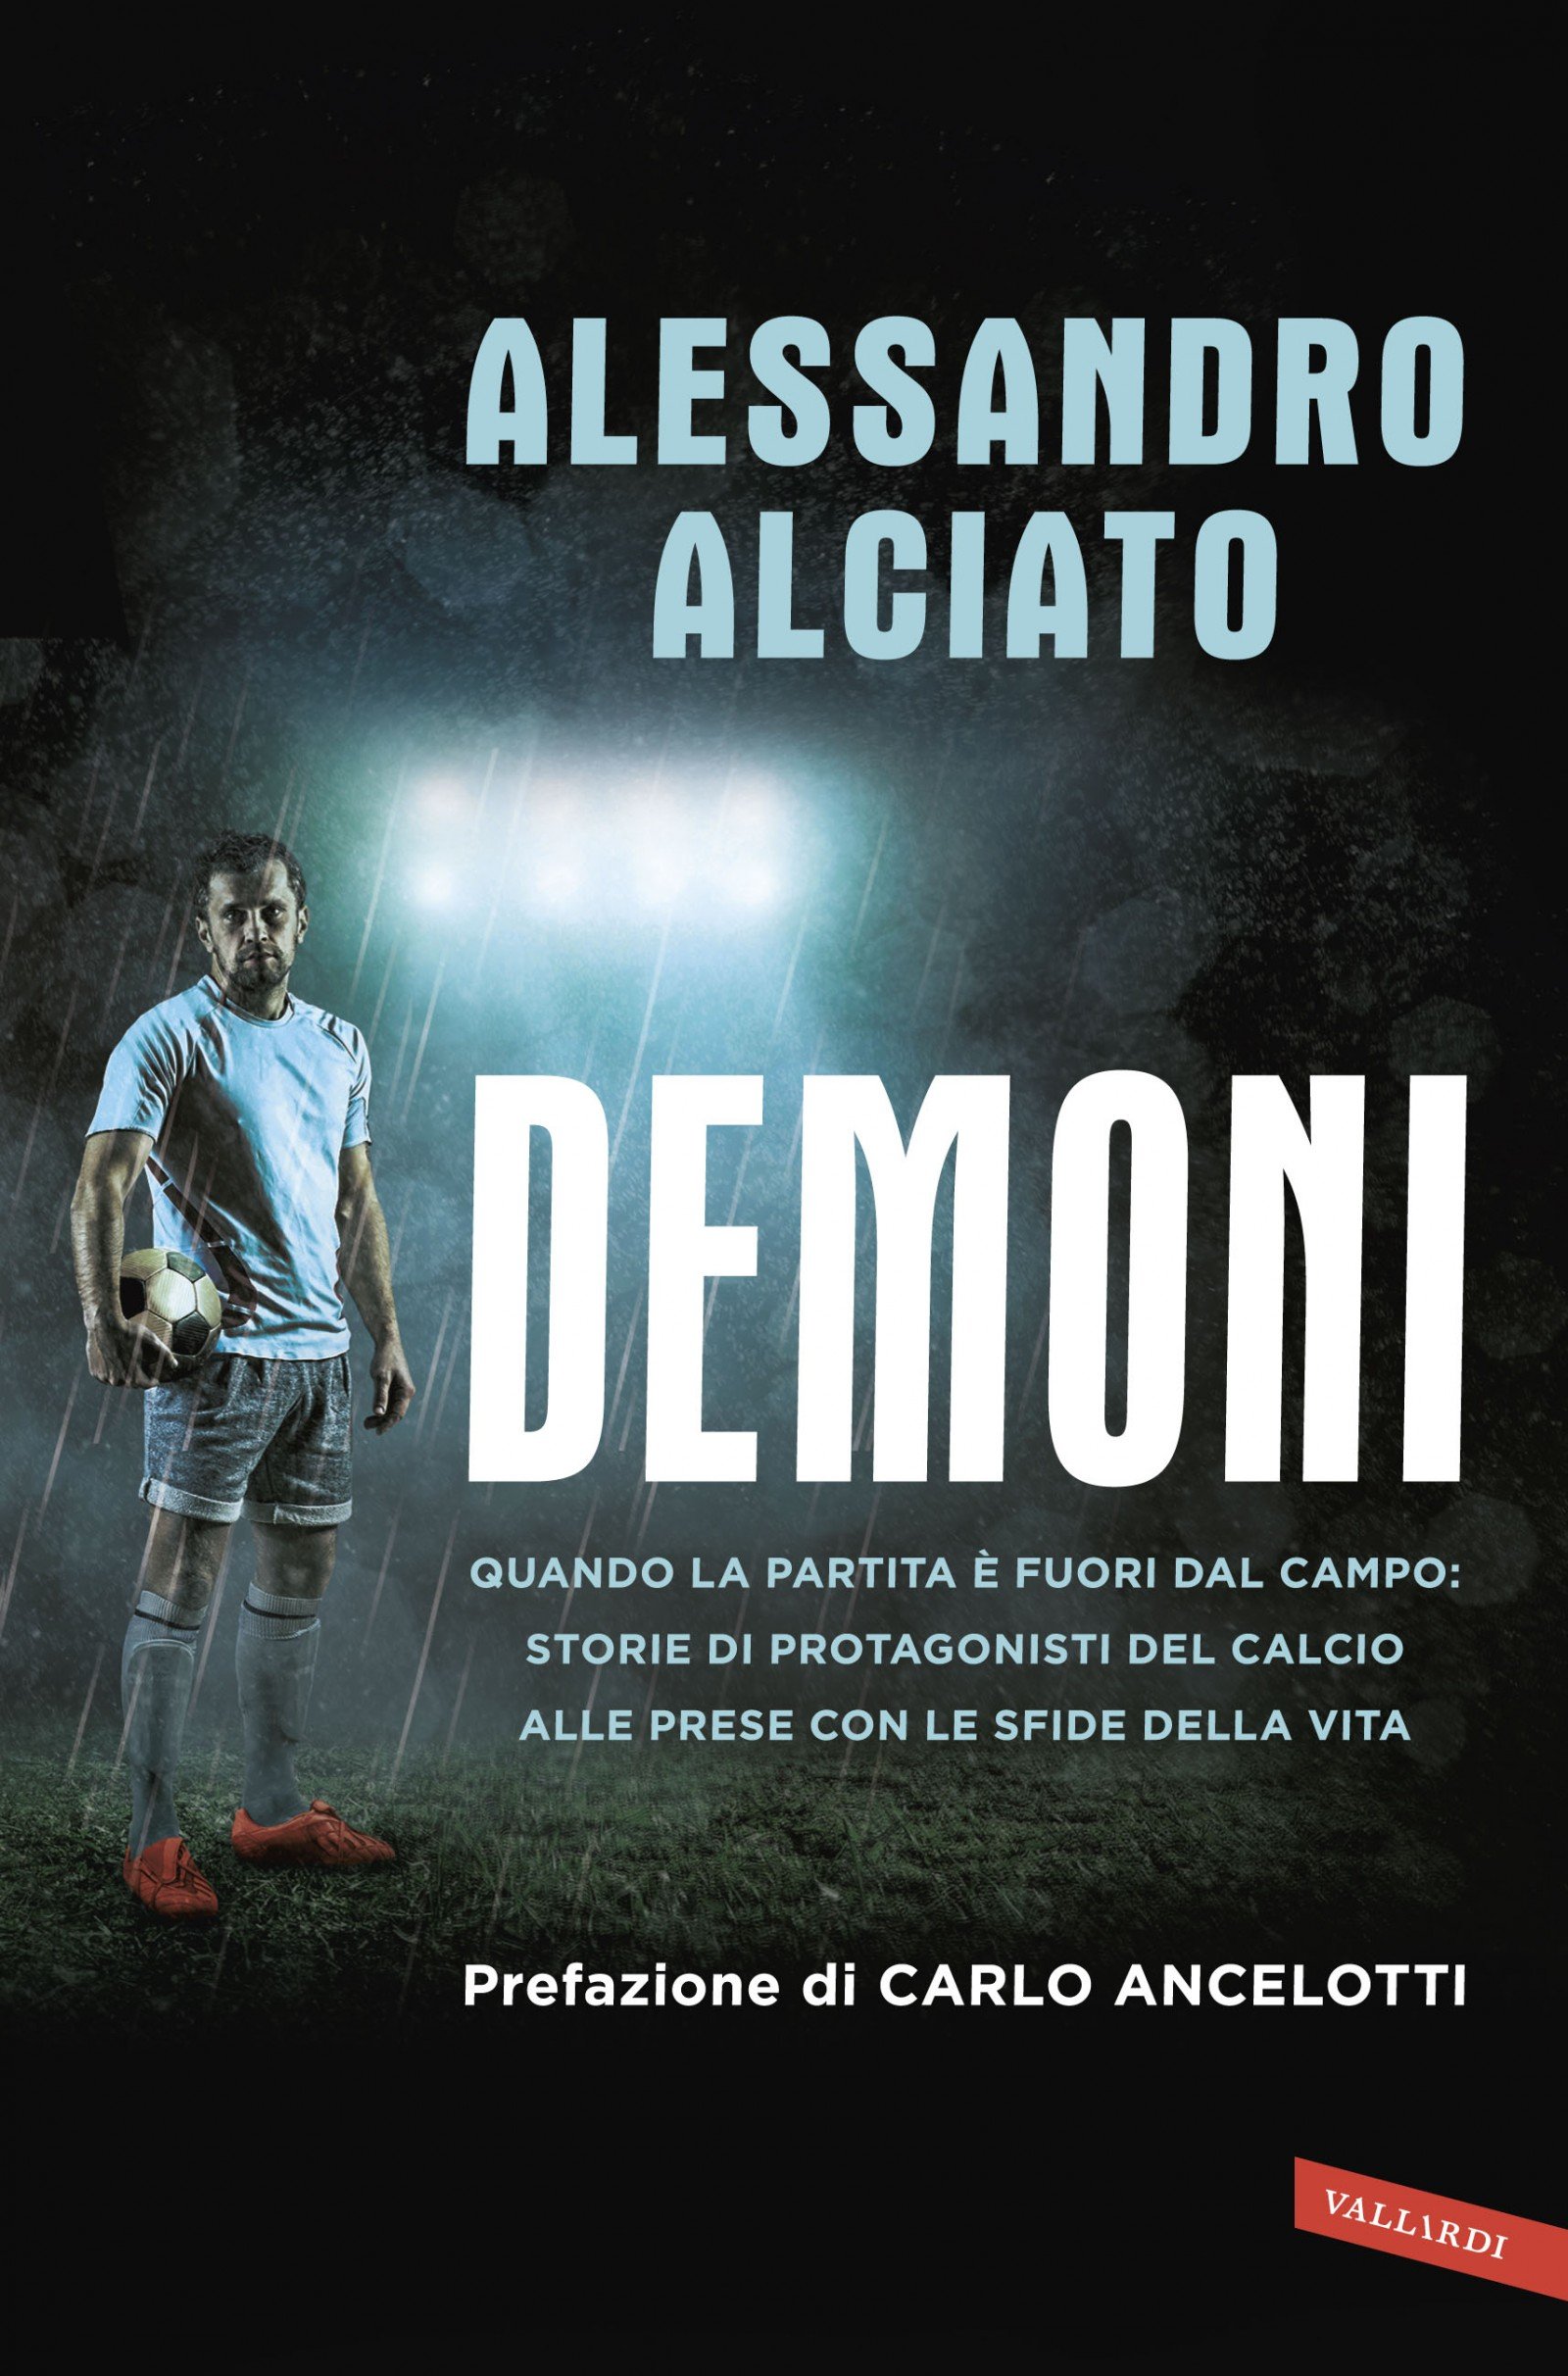 Alessandro Alciato svela le paure dei calciatori in “Demoni”